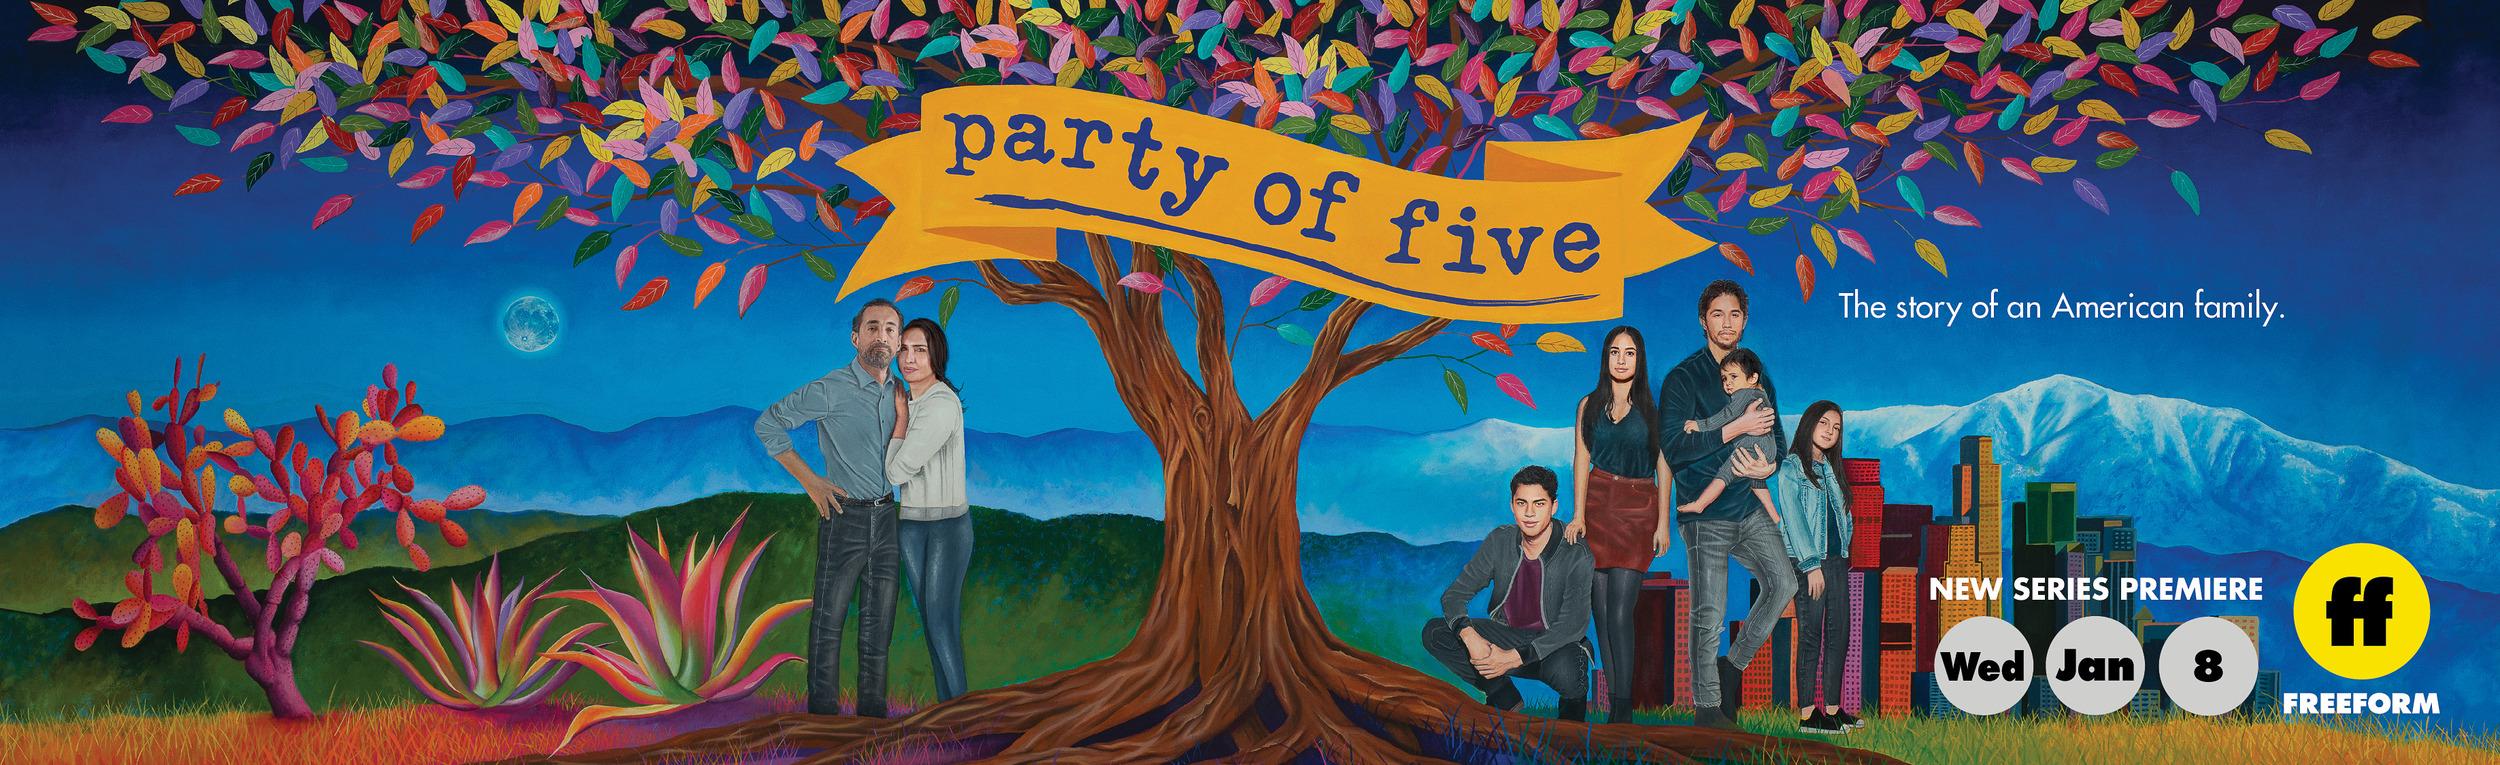 Постер фильма Party of Five